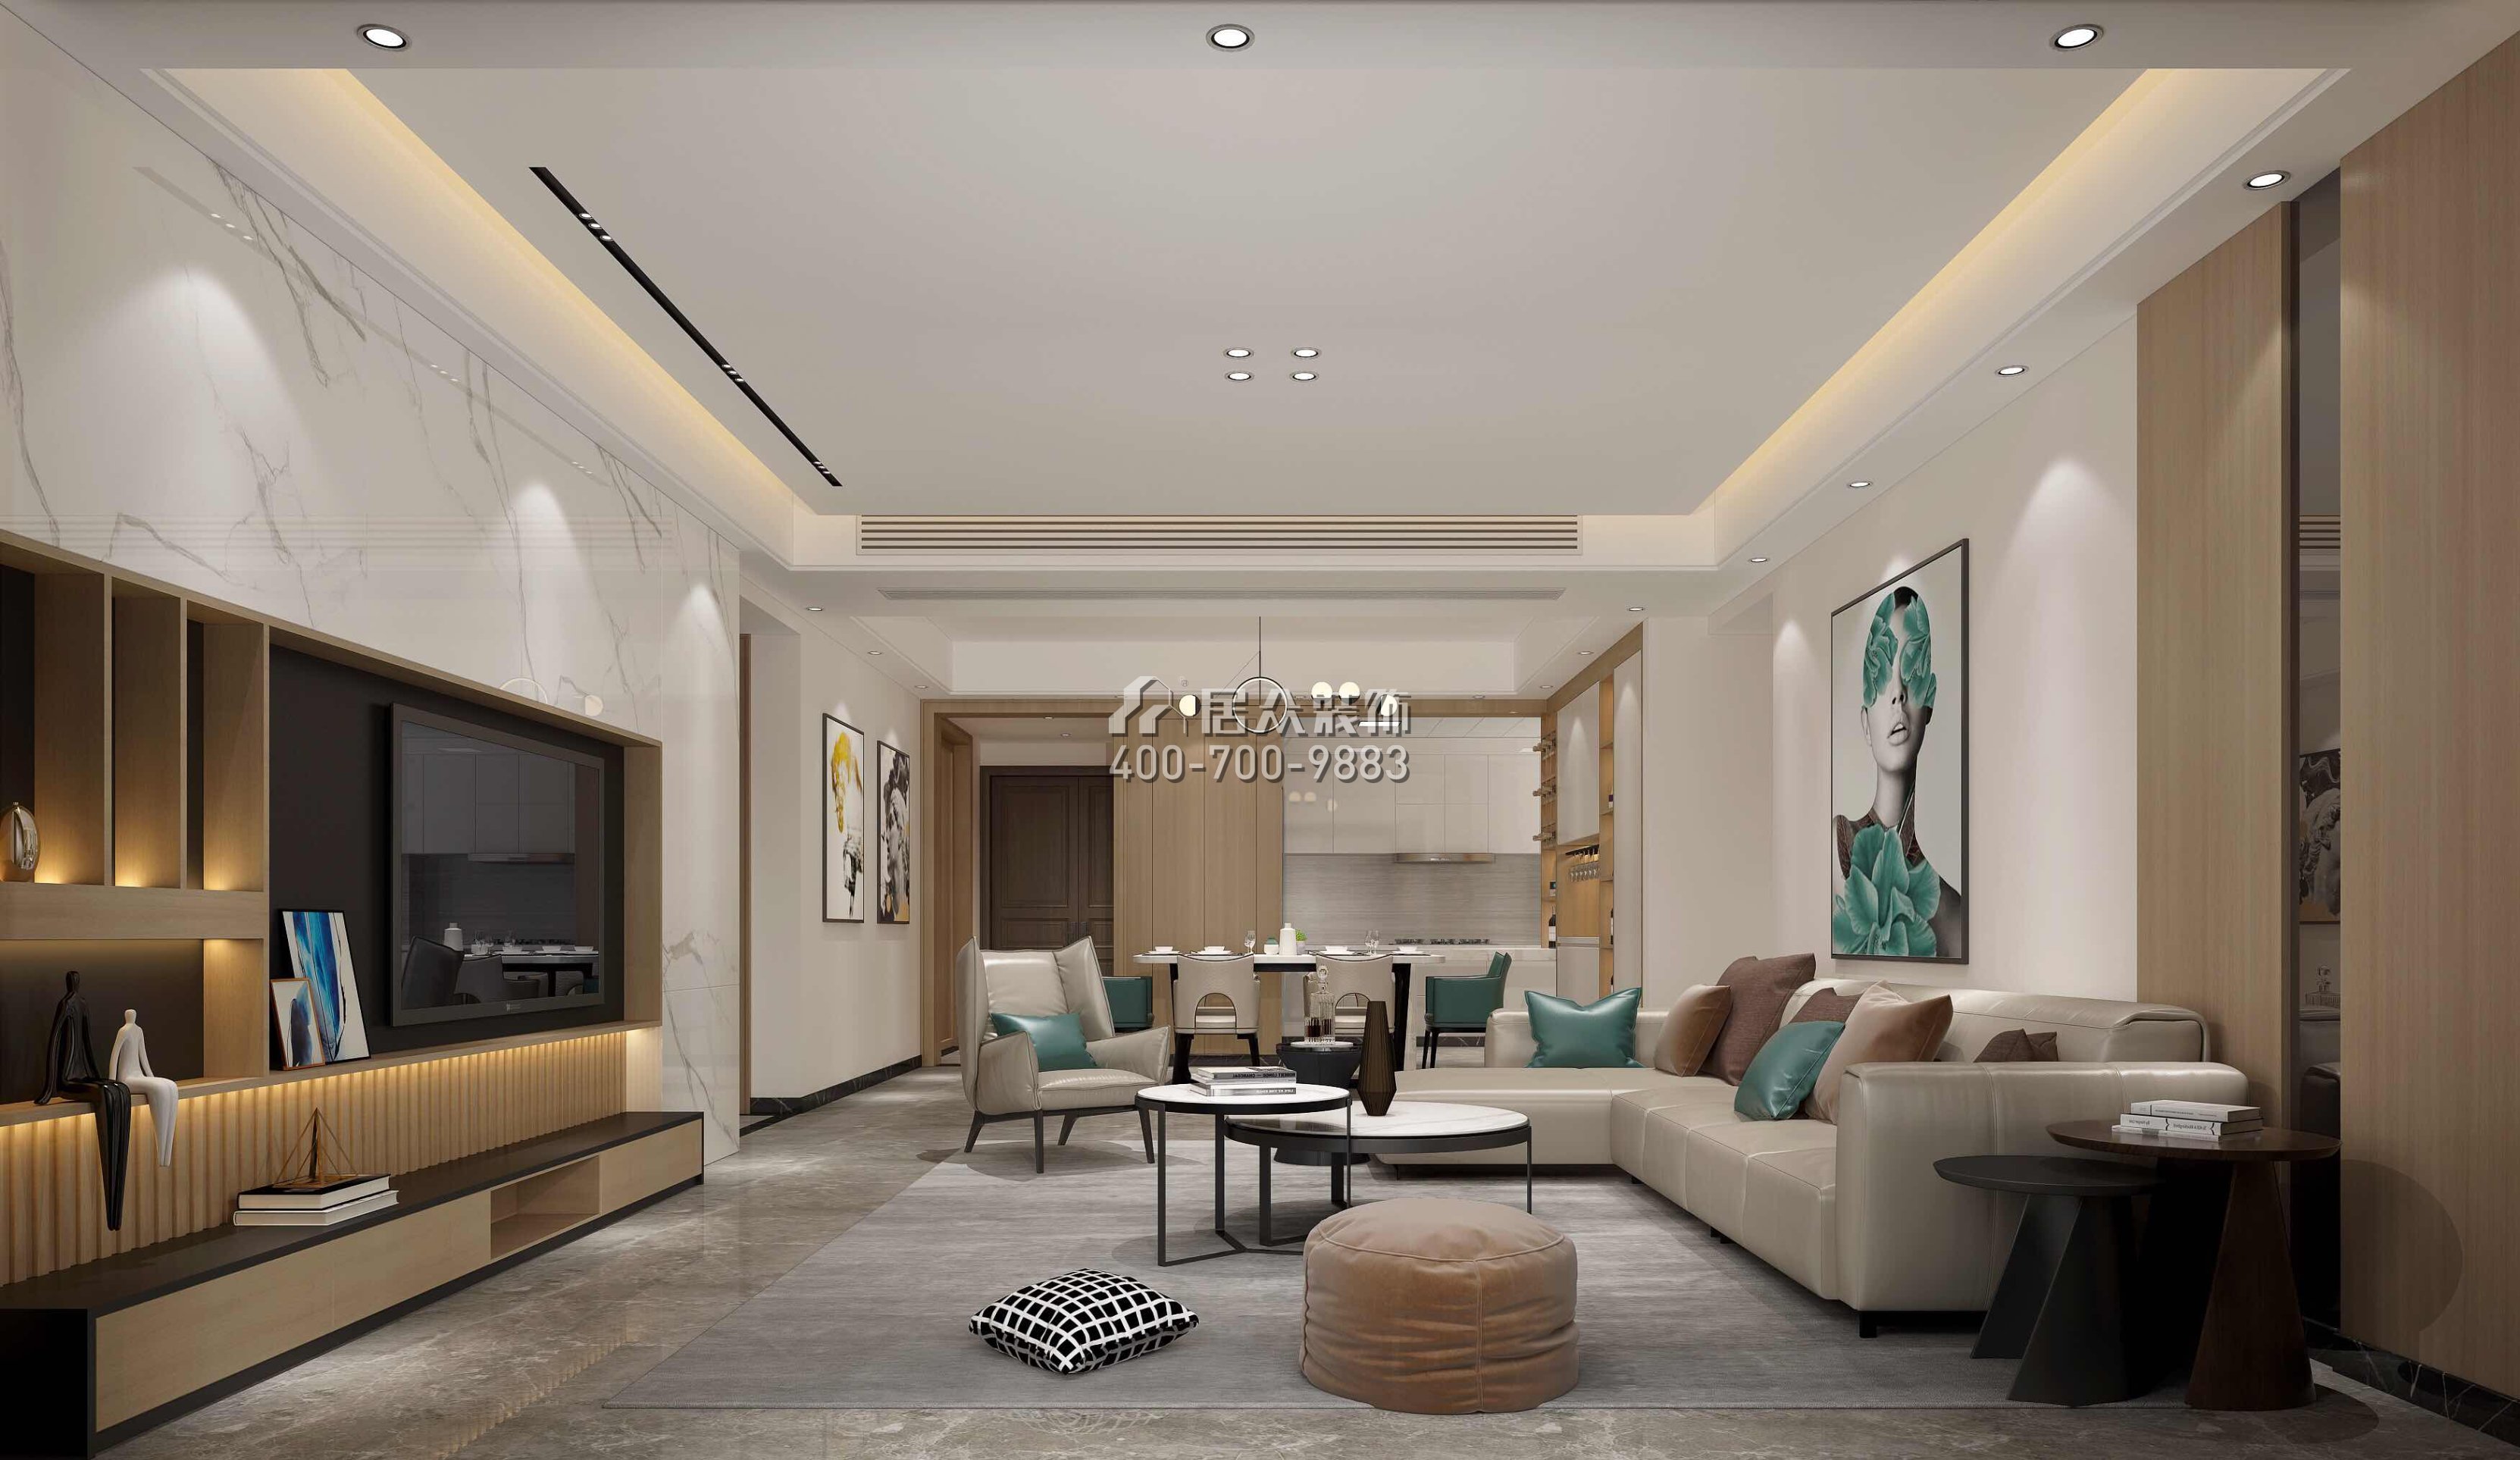 鼎峰尚境155平方米現代簡約風格平層戶型客廳裝修效果圖